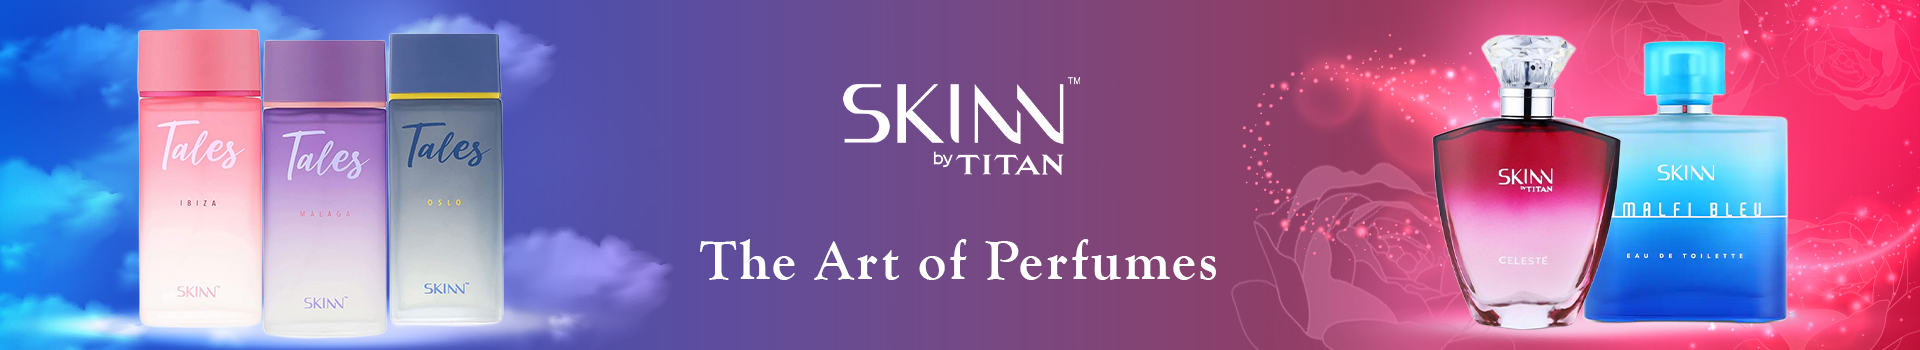 Skinn By Titan